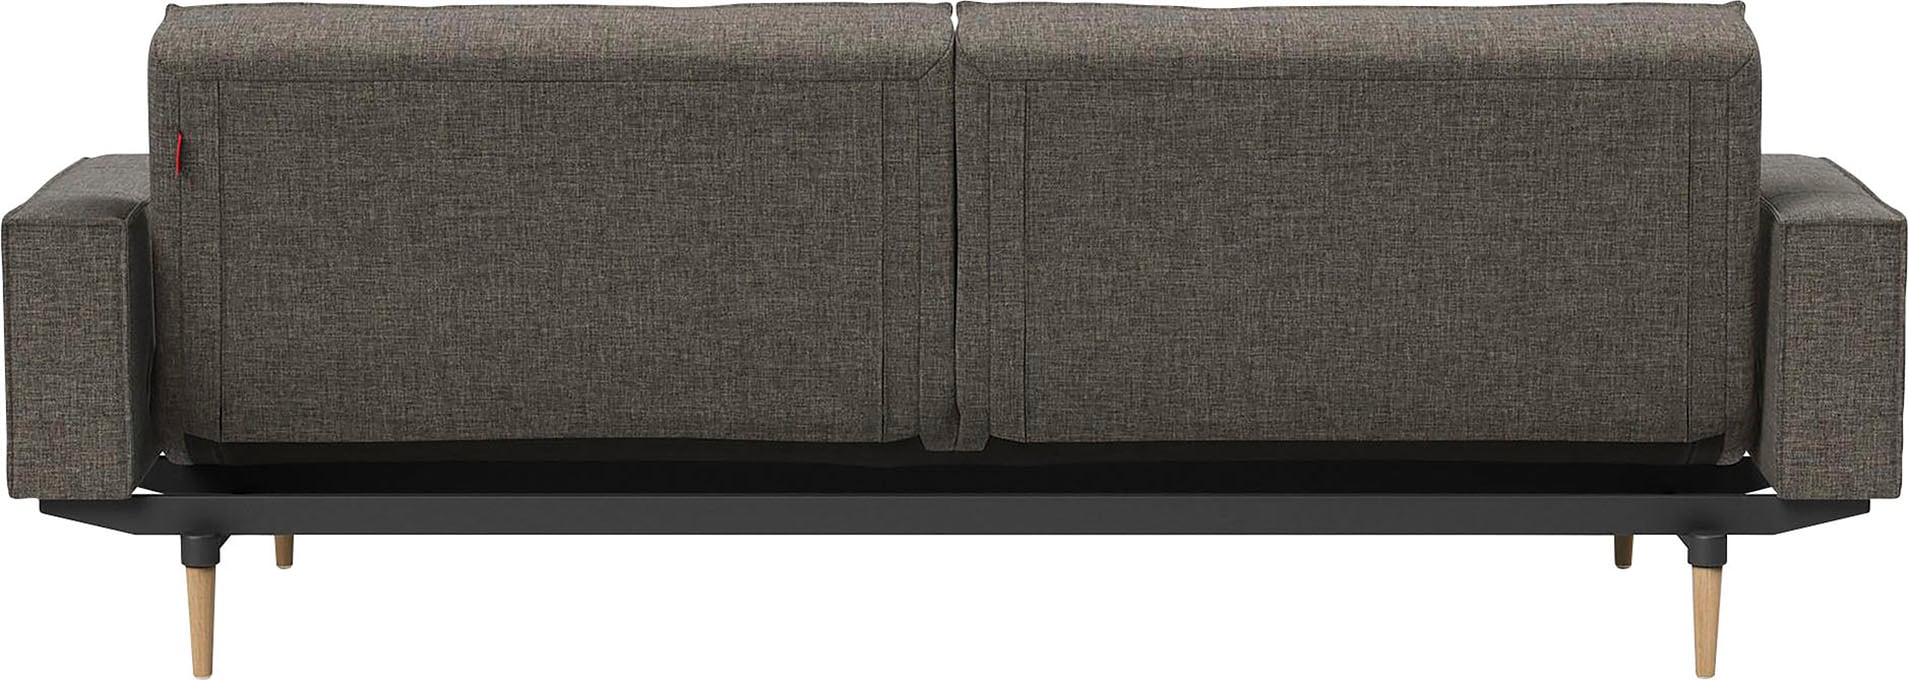 online LIVING »Splitback«, Styletto Armlehne in mit INNOVATION Sofa kaufen und Design ™ skandinavischen hellen Beinen,